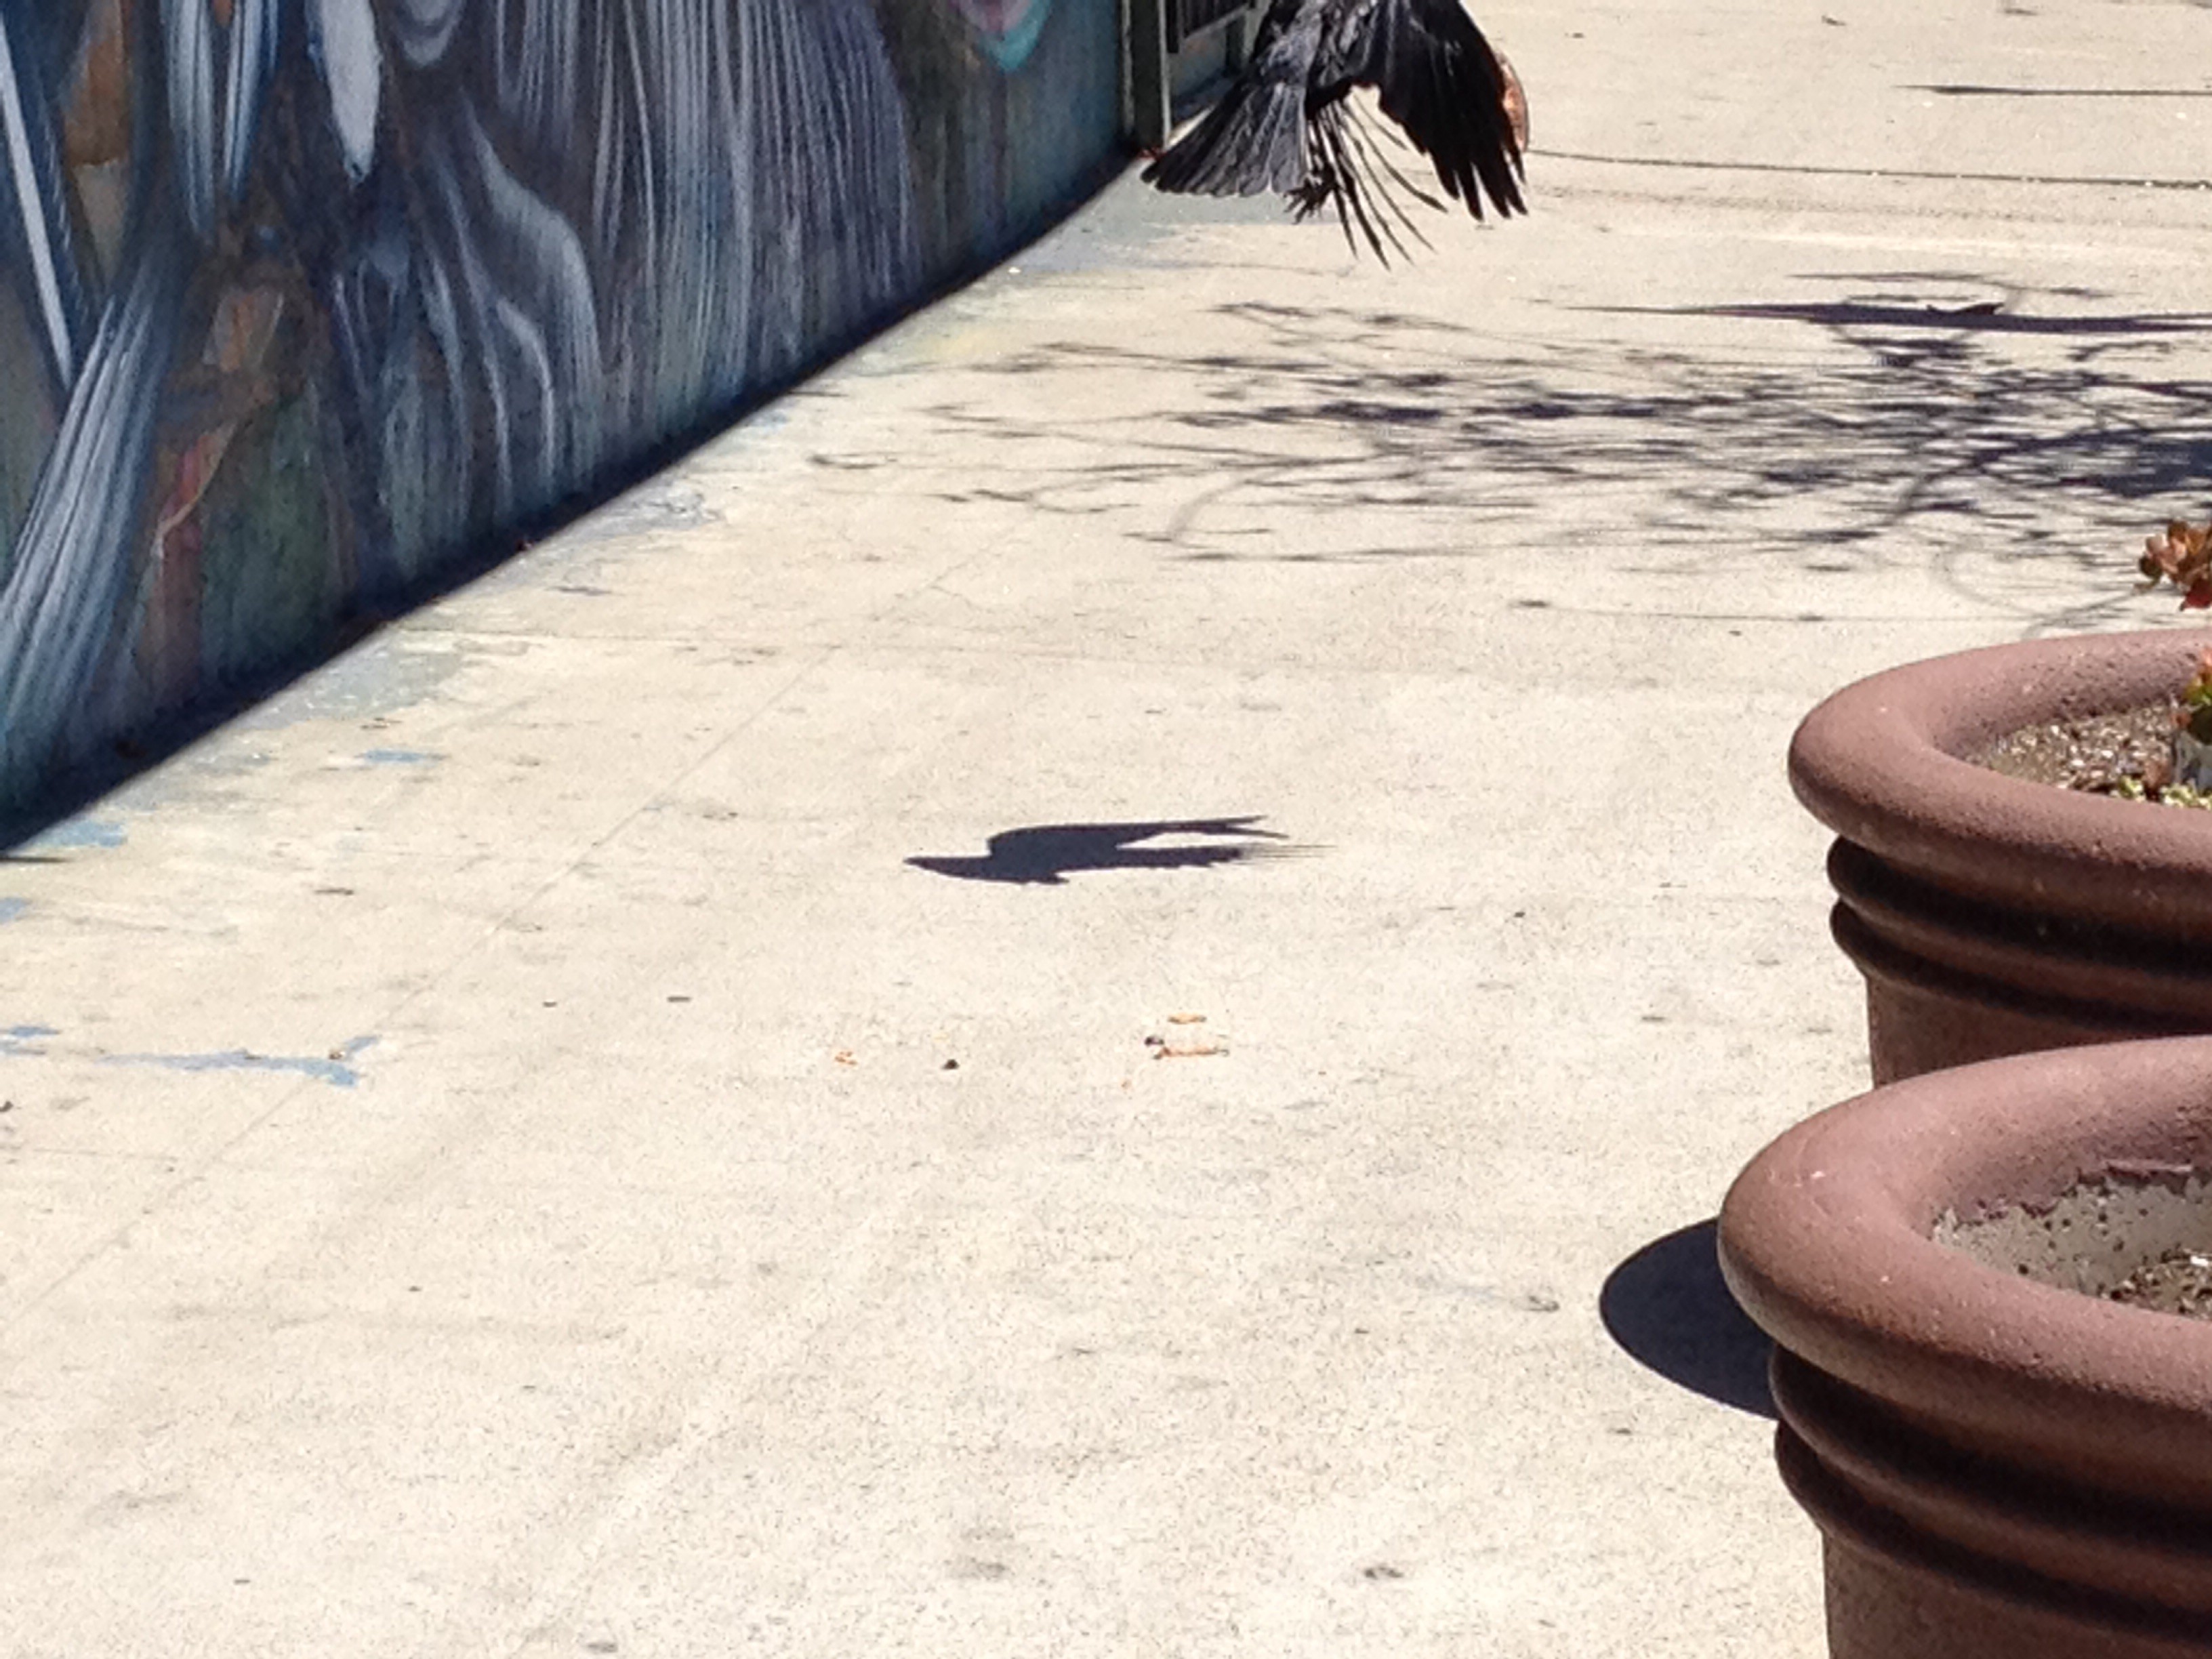 Crow flying away